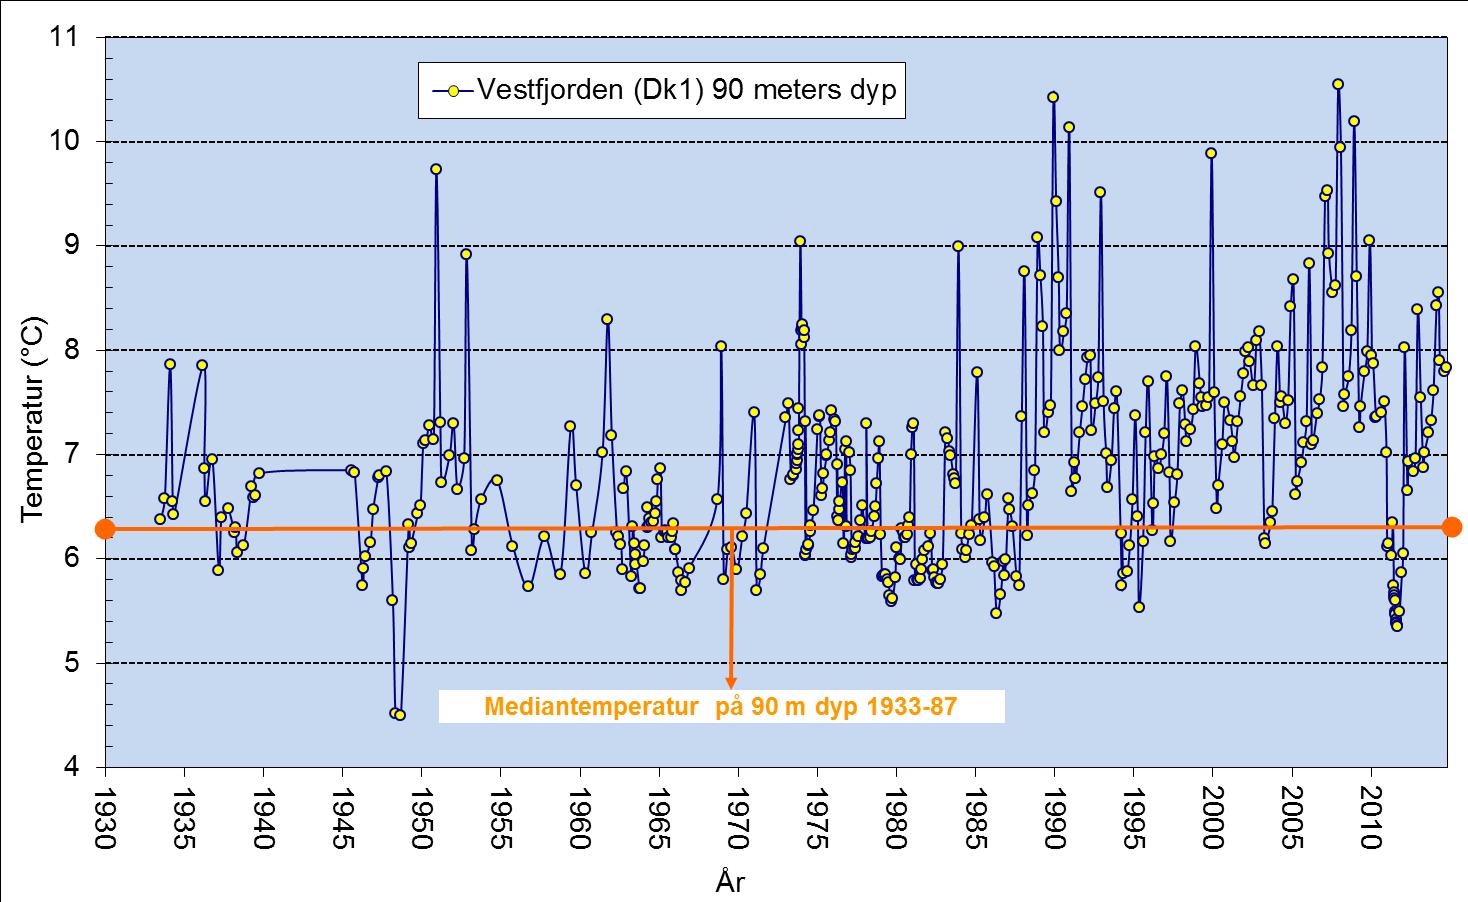 Temperaturutviklingen siden 1930-tallet i Vestfjordens dypvann viser en klar økning fra ca. 1988 og fram til ca. 2007.